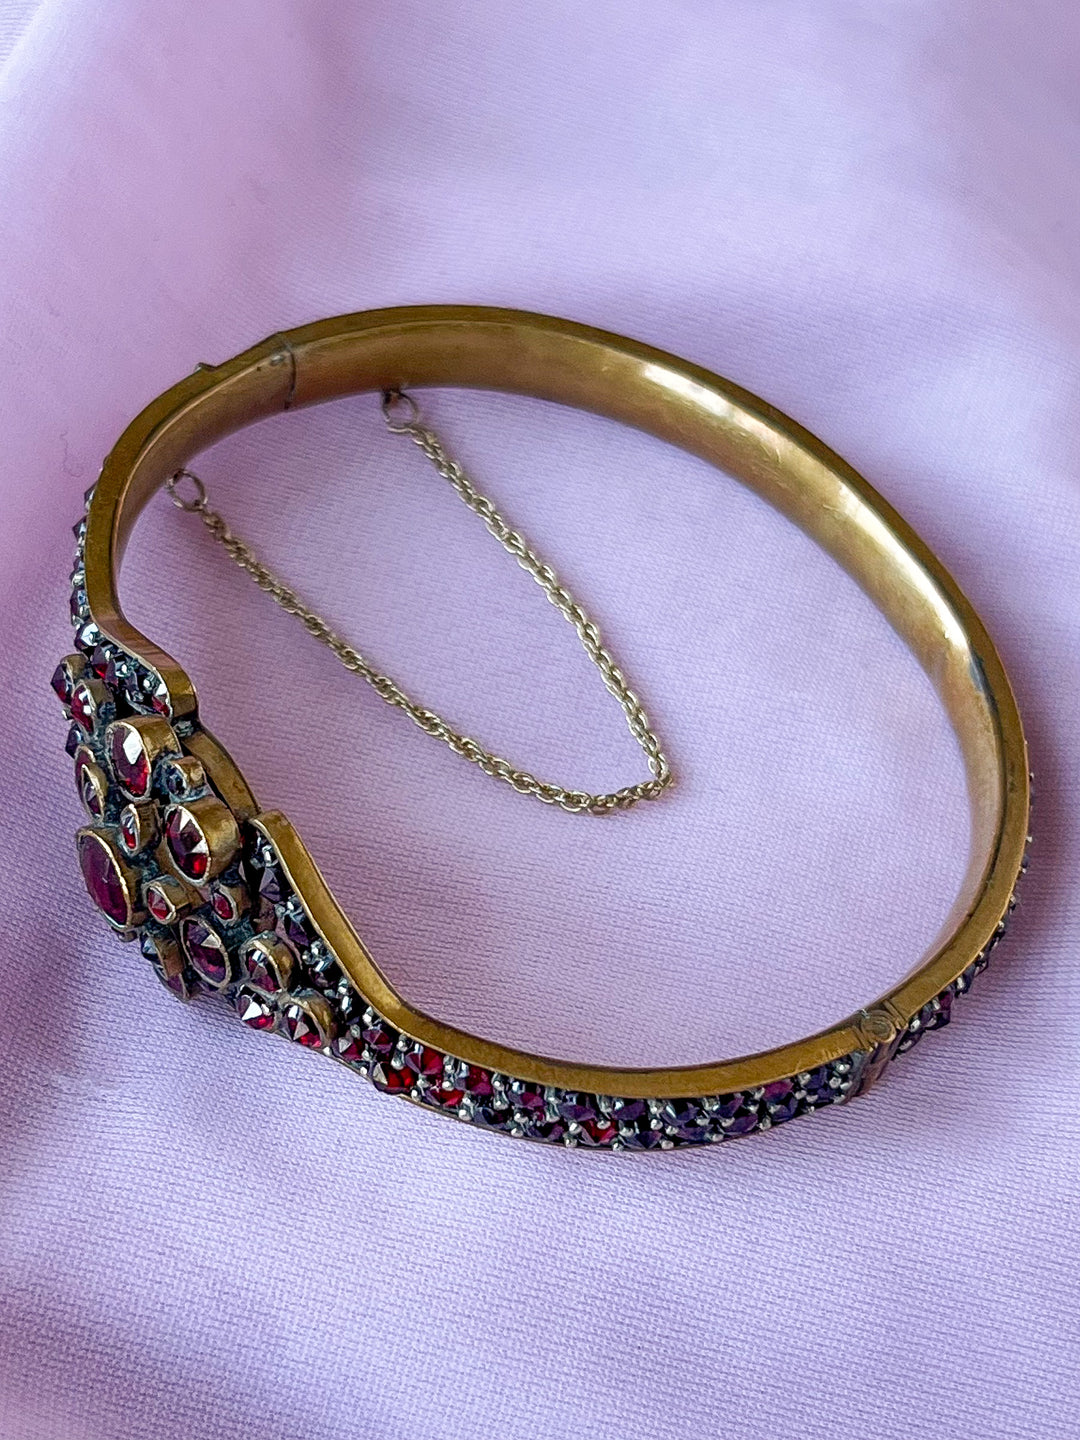 Lovely Bohemian Garnet Bangle Bracelet with Cartouche Medallion c. 1890